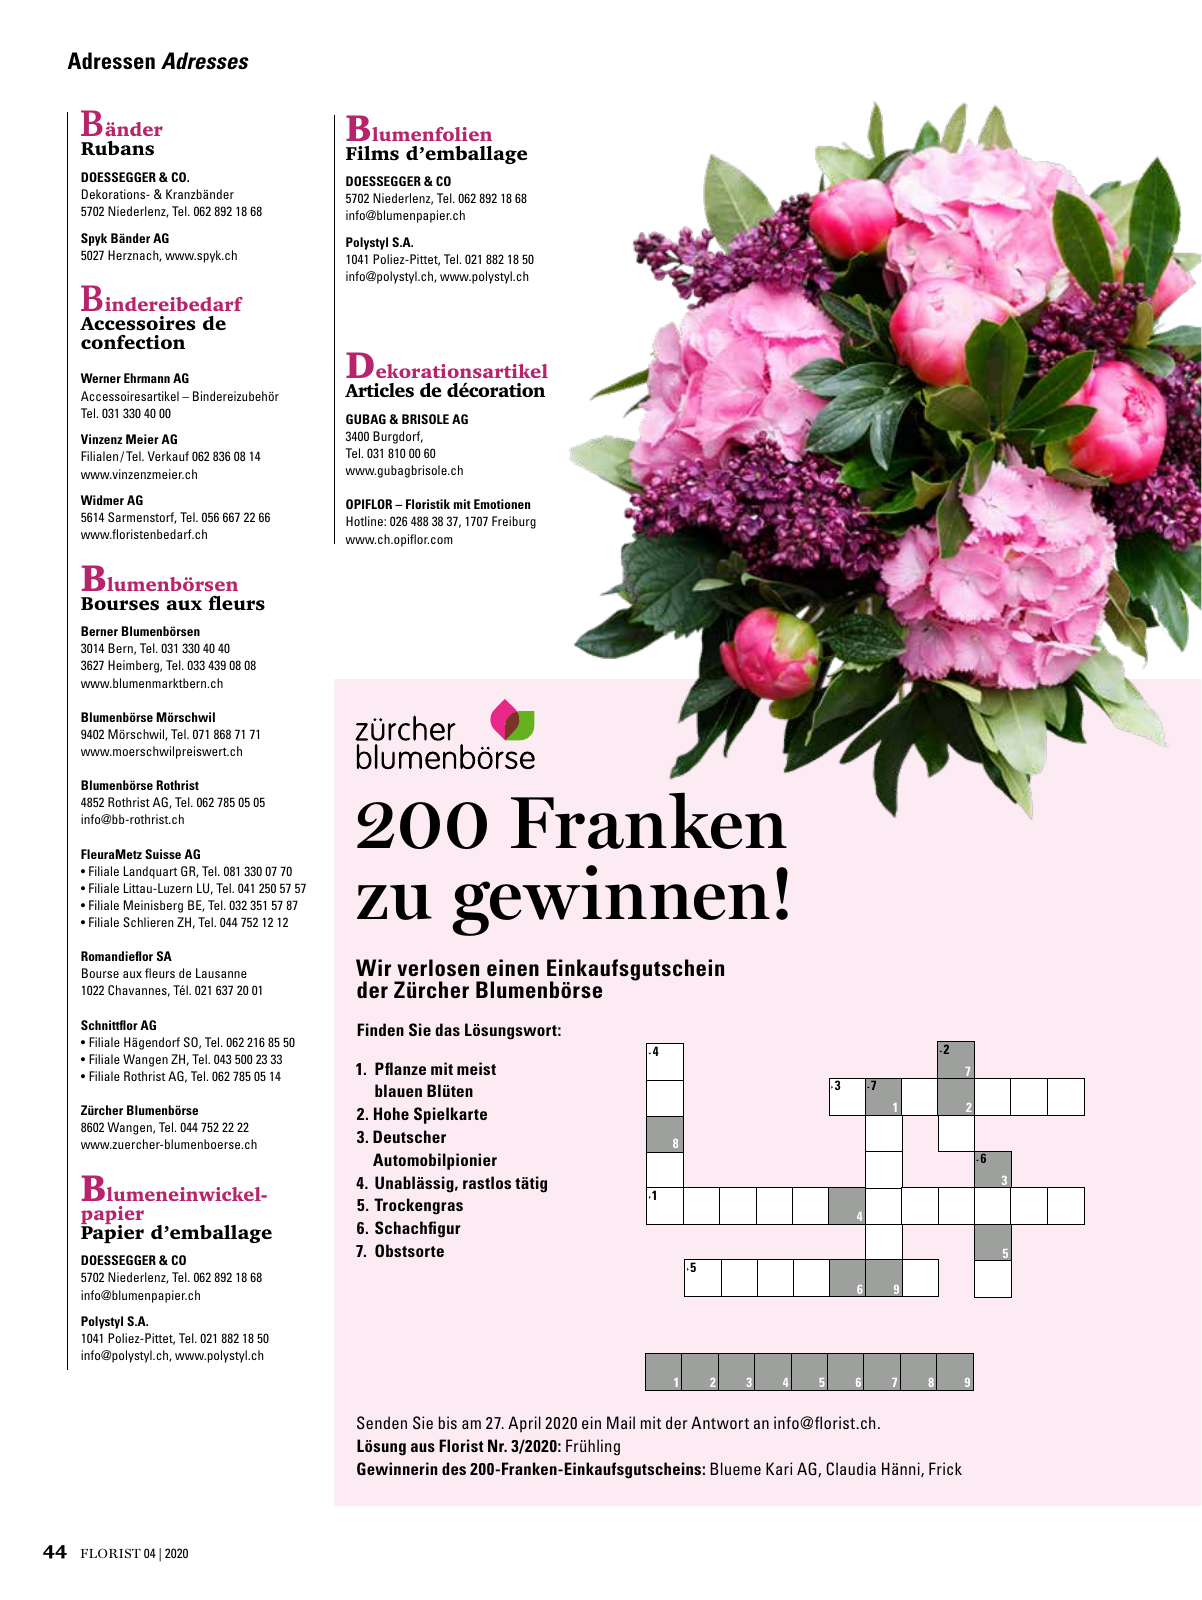 Vorschau Florist - Ausgabe April 2020 Seite 42